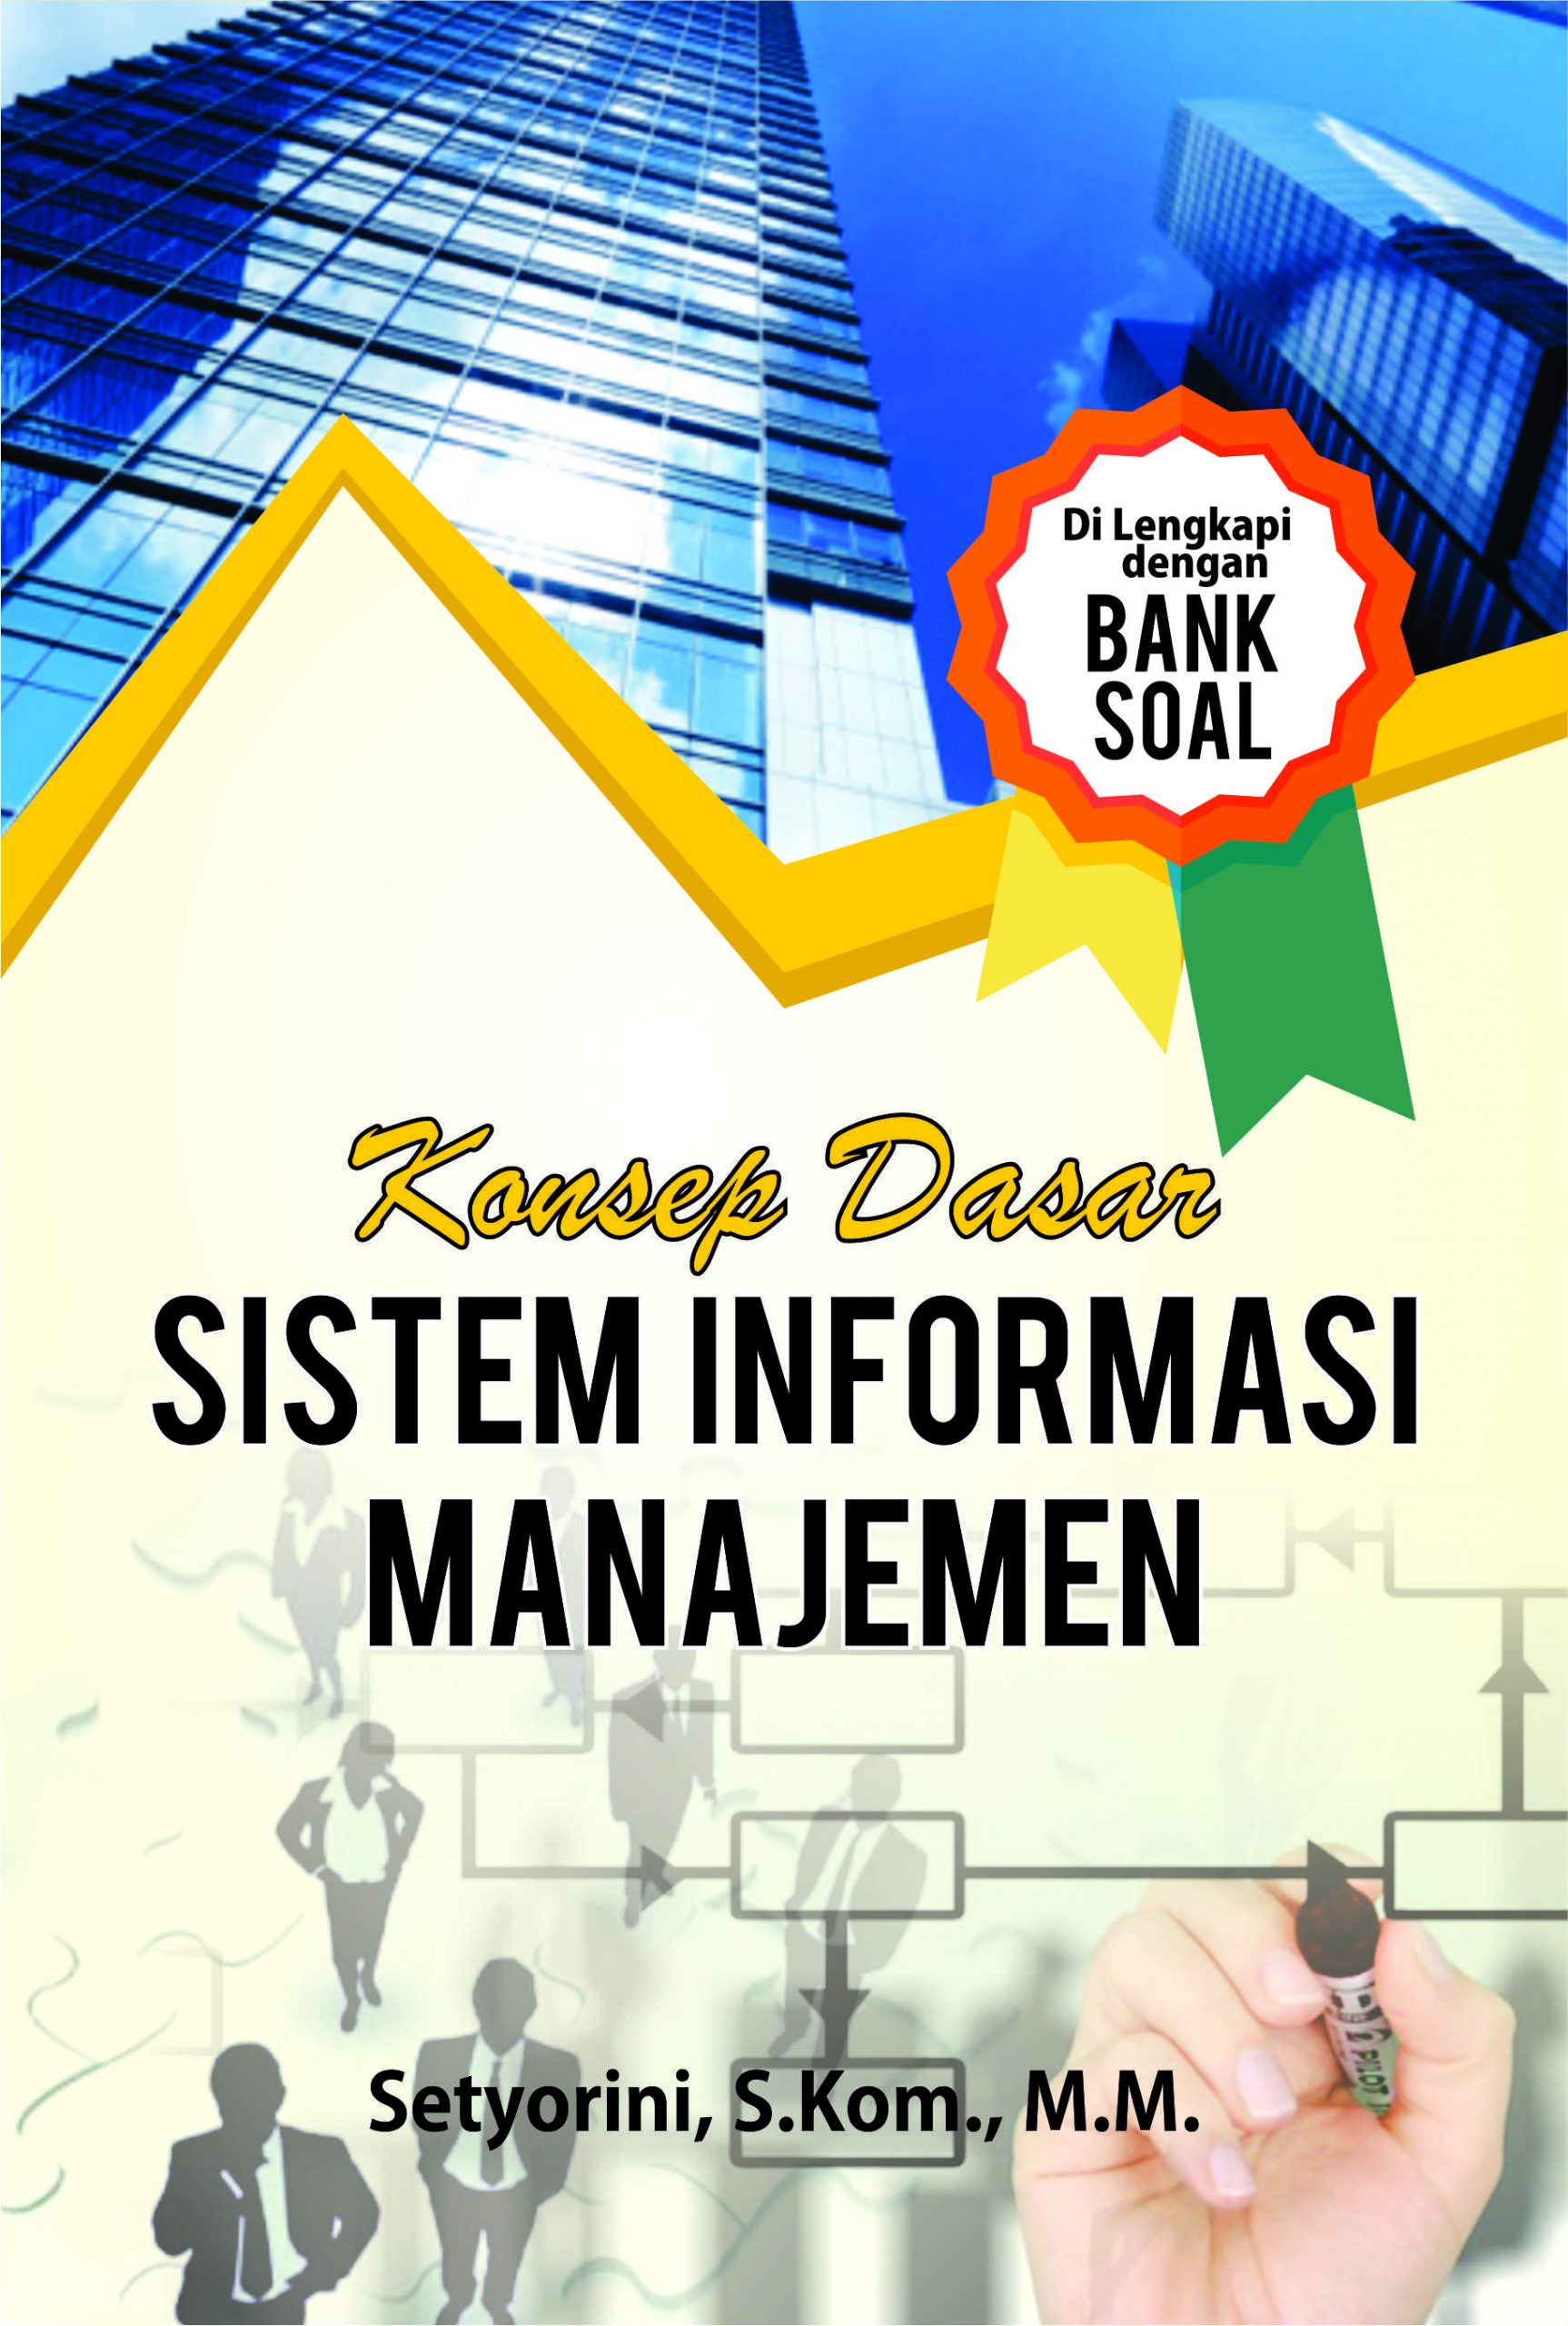 konsep sistem informasi manajemen